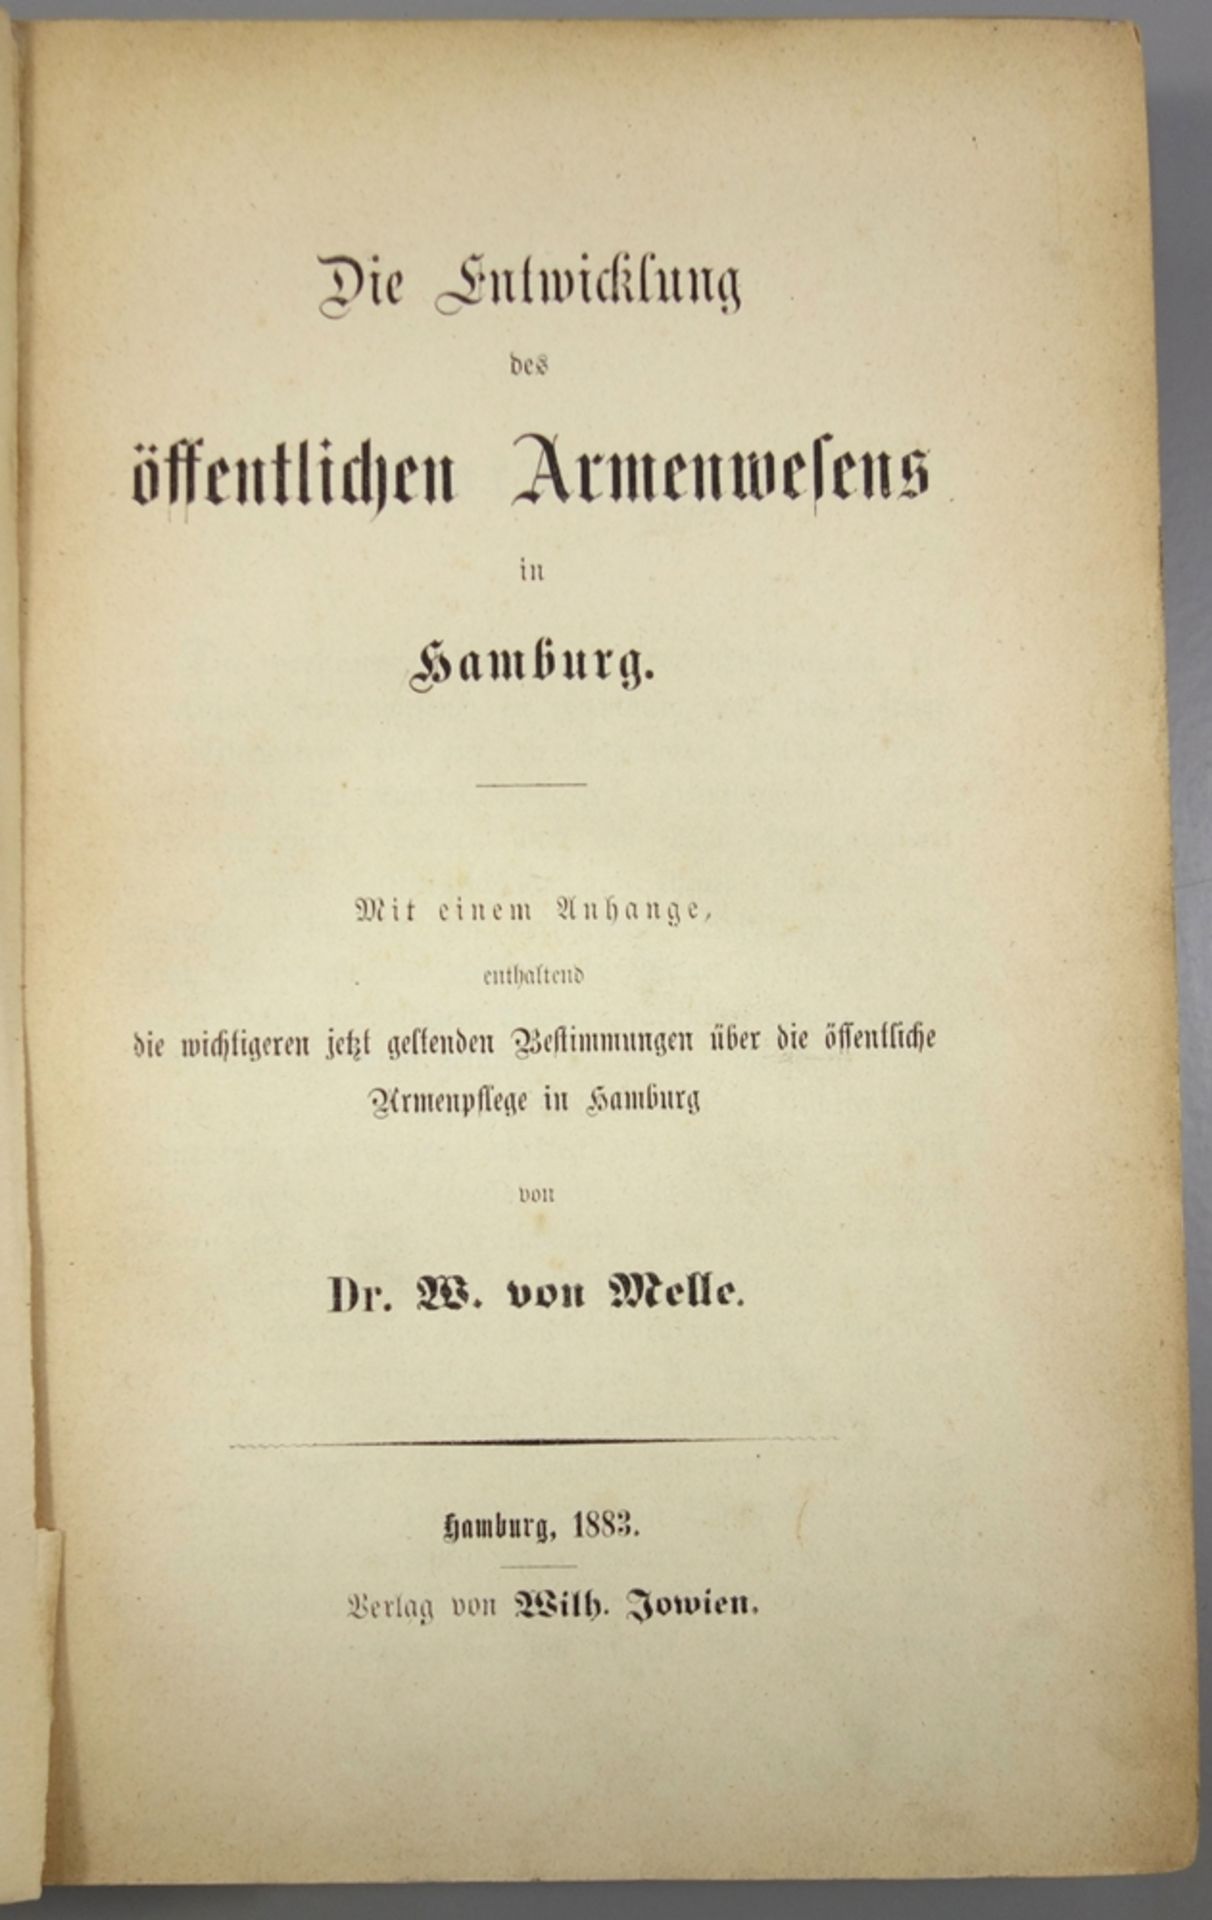 Die Entwicklung des öffentlichen Armenwesens in Hamburg, Dr.W.von Welle, Hamburg 1883, "Mit einem